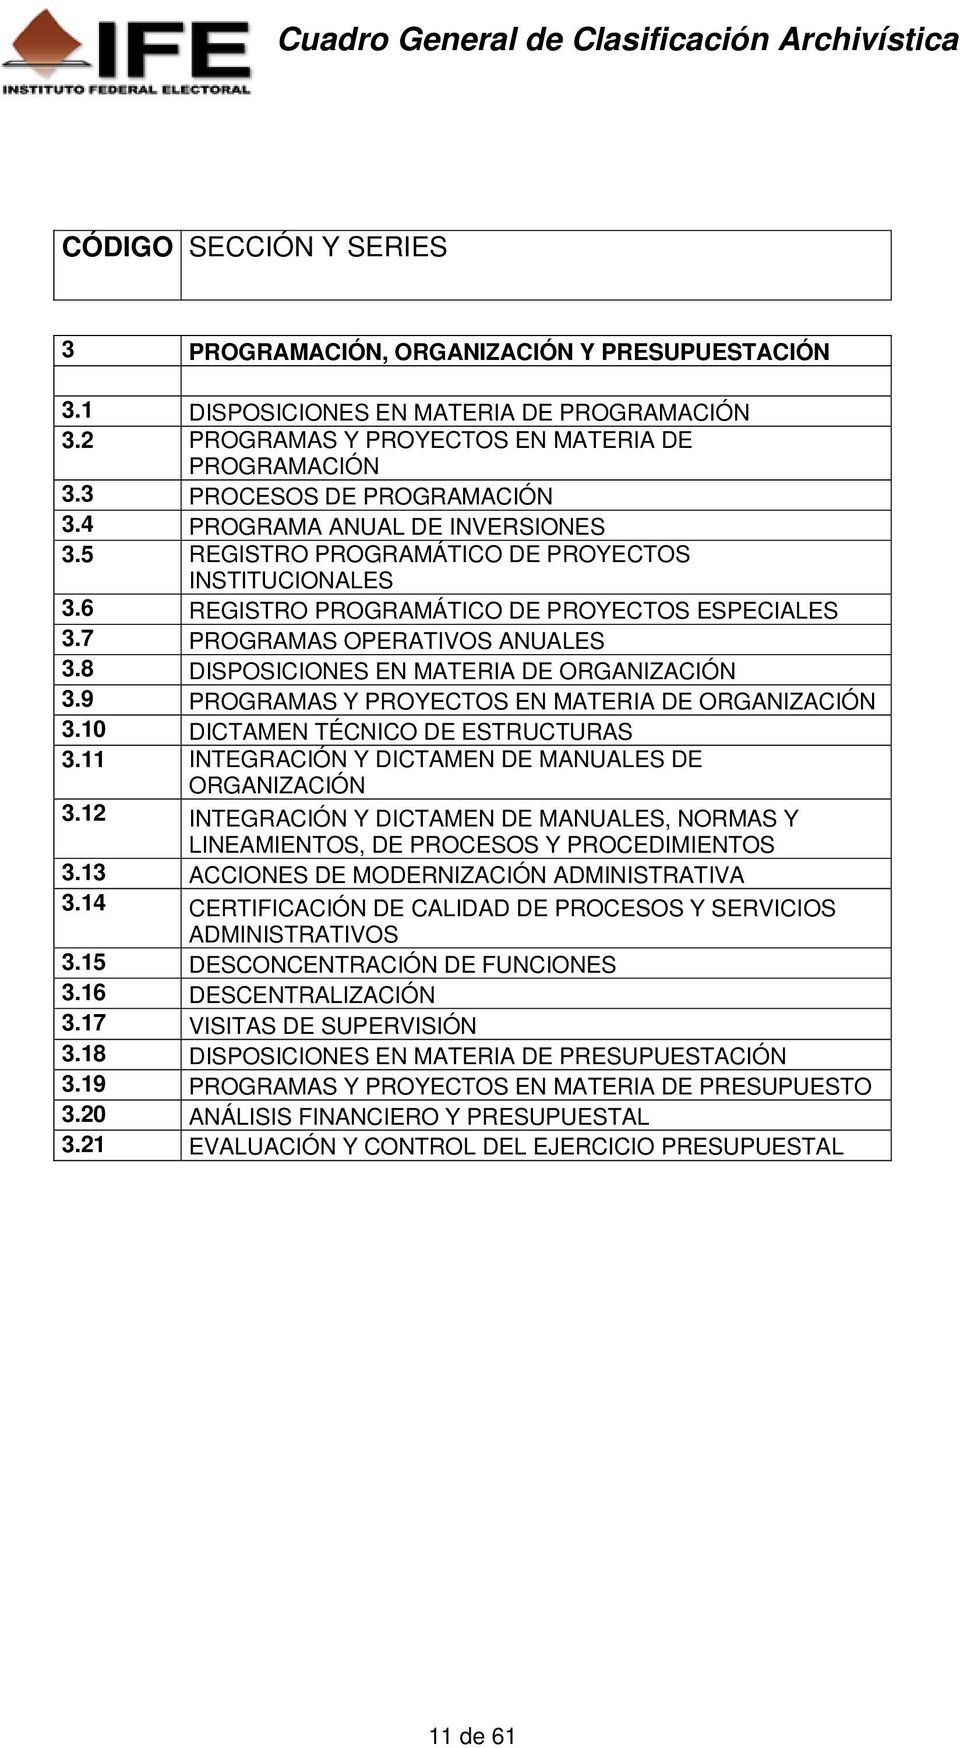 6 REGISTRO PROGRAMÁTICO DE PROYECTOS ESPECIALES 3.7 PROGRAMAS OPERATIVOS ANUALES 3.8 DISPOSICIONES EN MATERIA DE ORGANIZACIÓN 3.9 PROGRAMAS Y PROYECTOS EN MATERIA DE ORGANIZACIÓN 3.